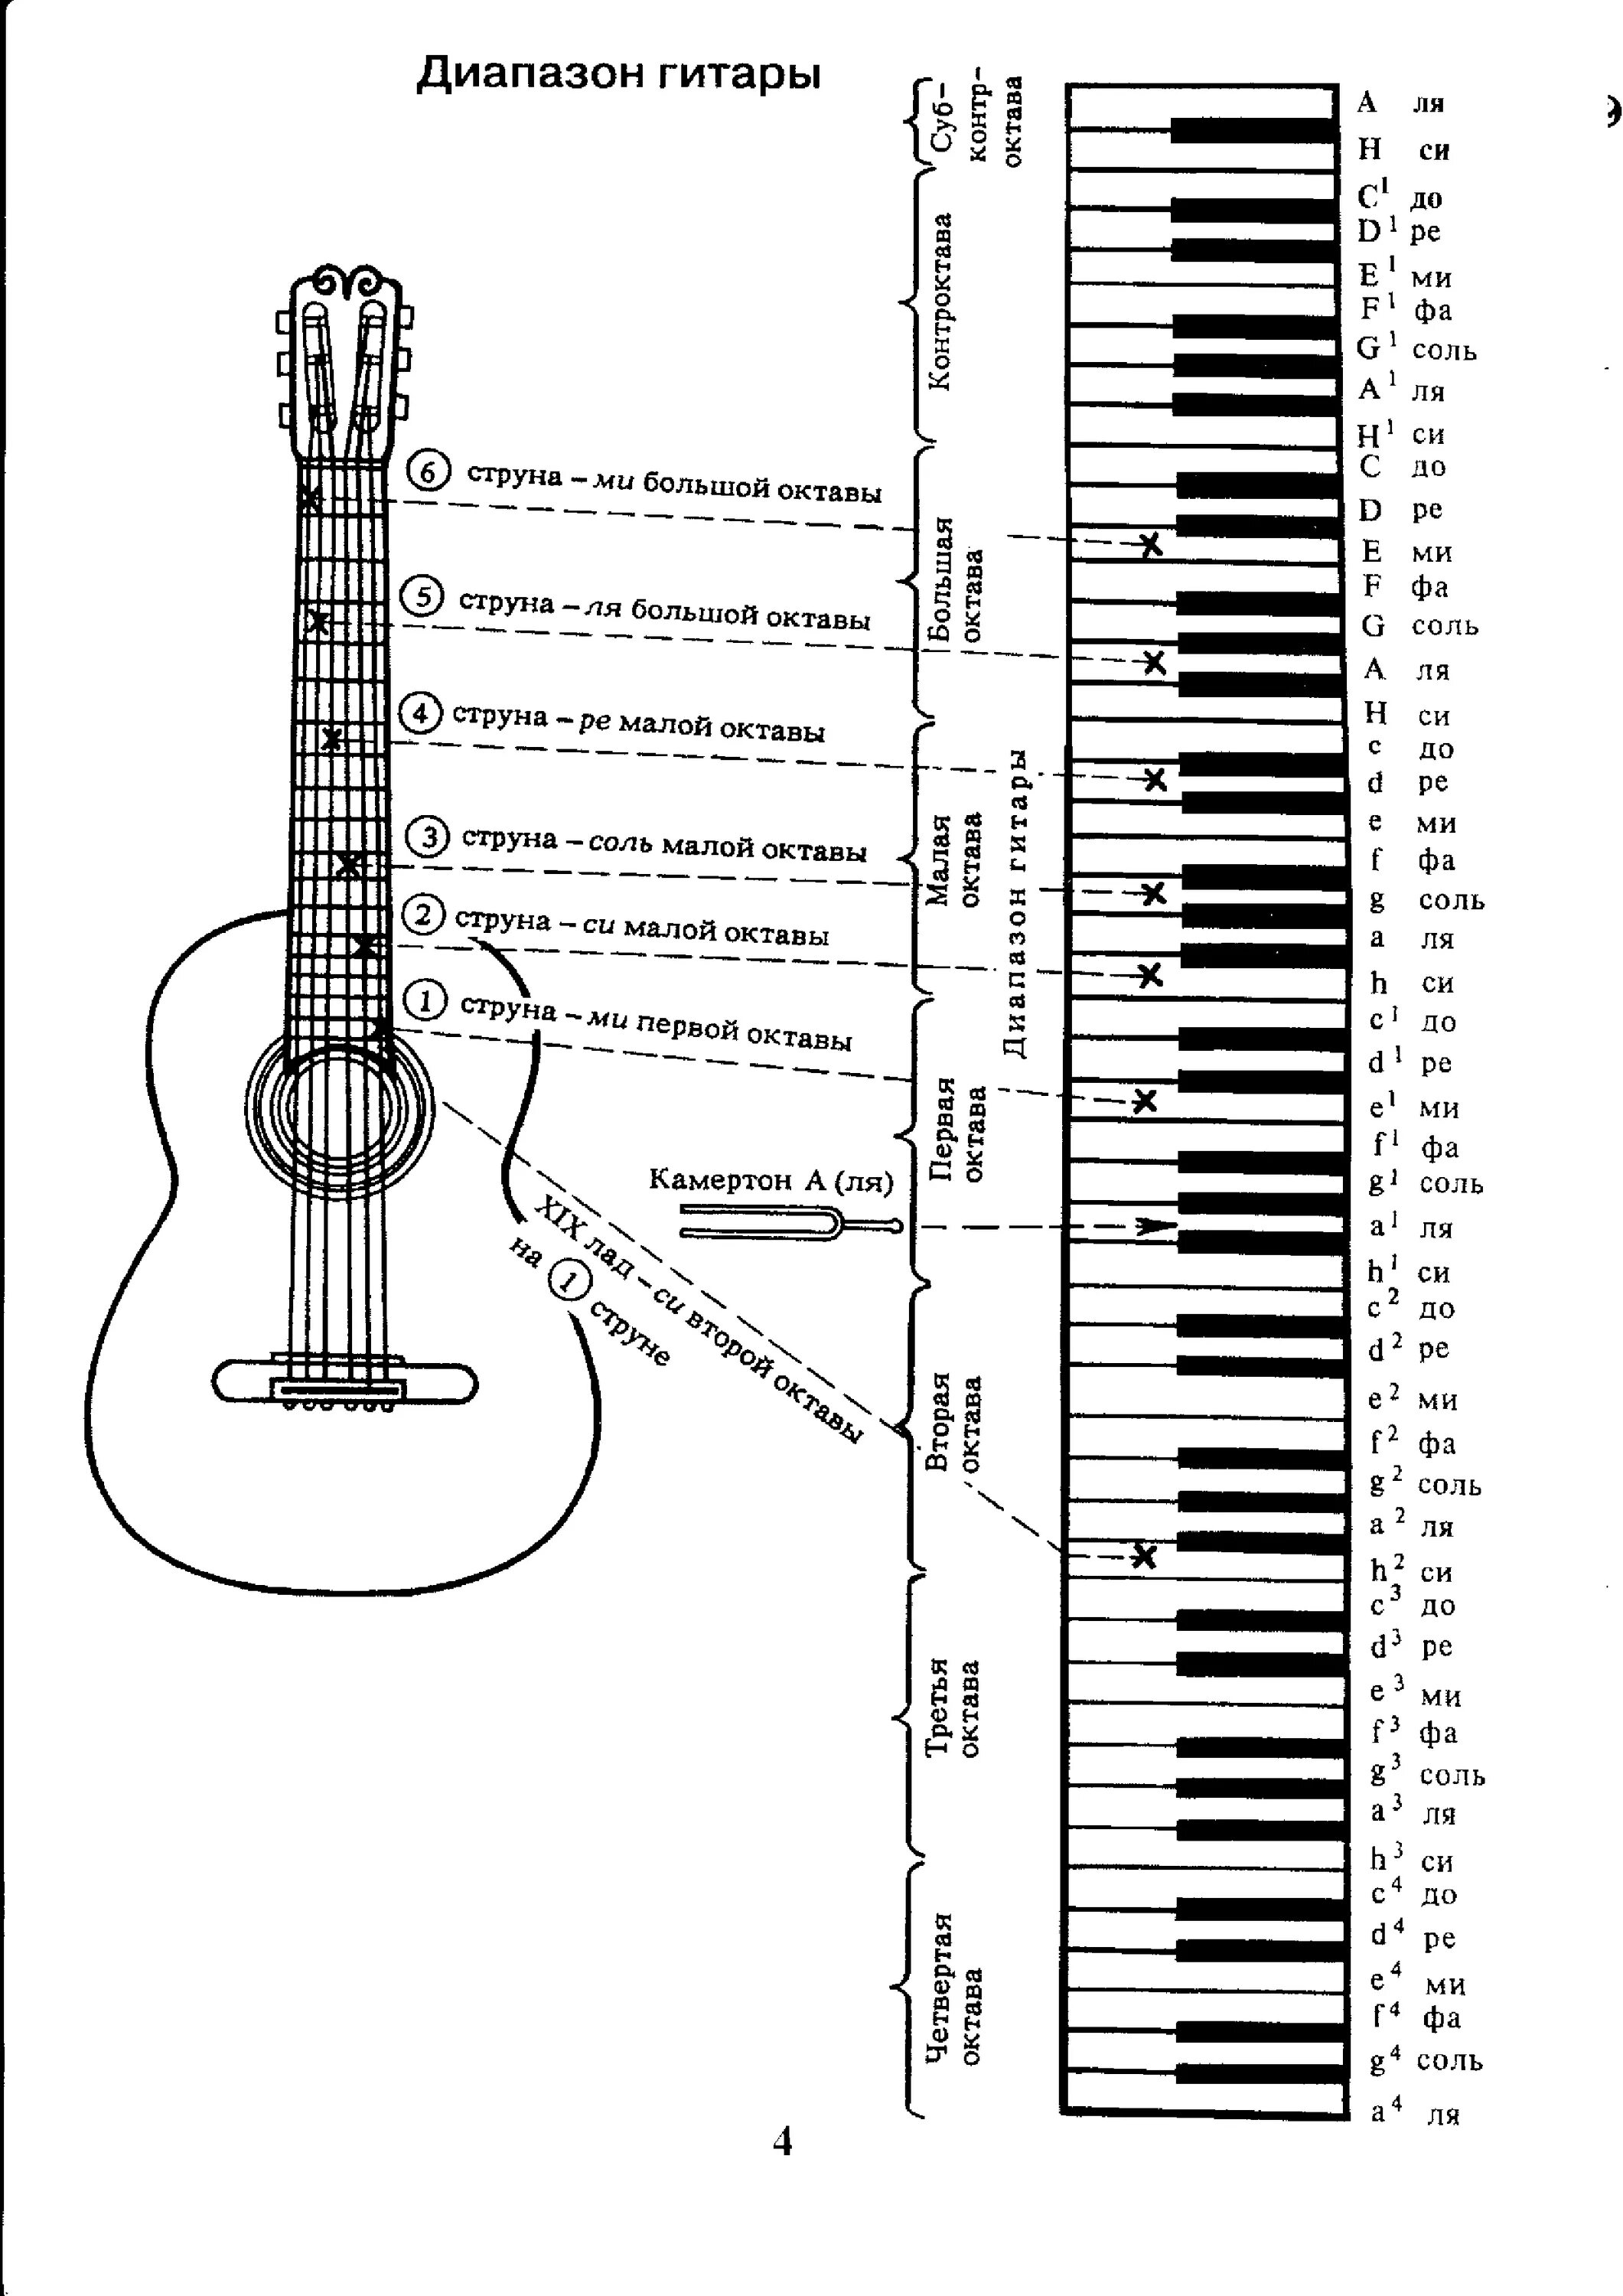 Аппликатура аккордов для гитары 6 струн для начинающих. Ноты на гитарном грифе 6 струнной. Лады на 6 струнной гитаре для начинающих. Схема гитары классической 6 струнной. Гитара 7 ноты